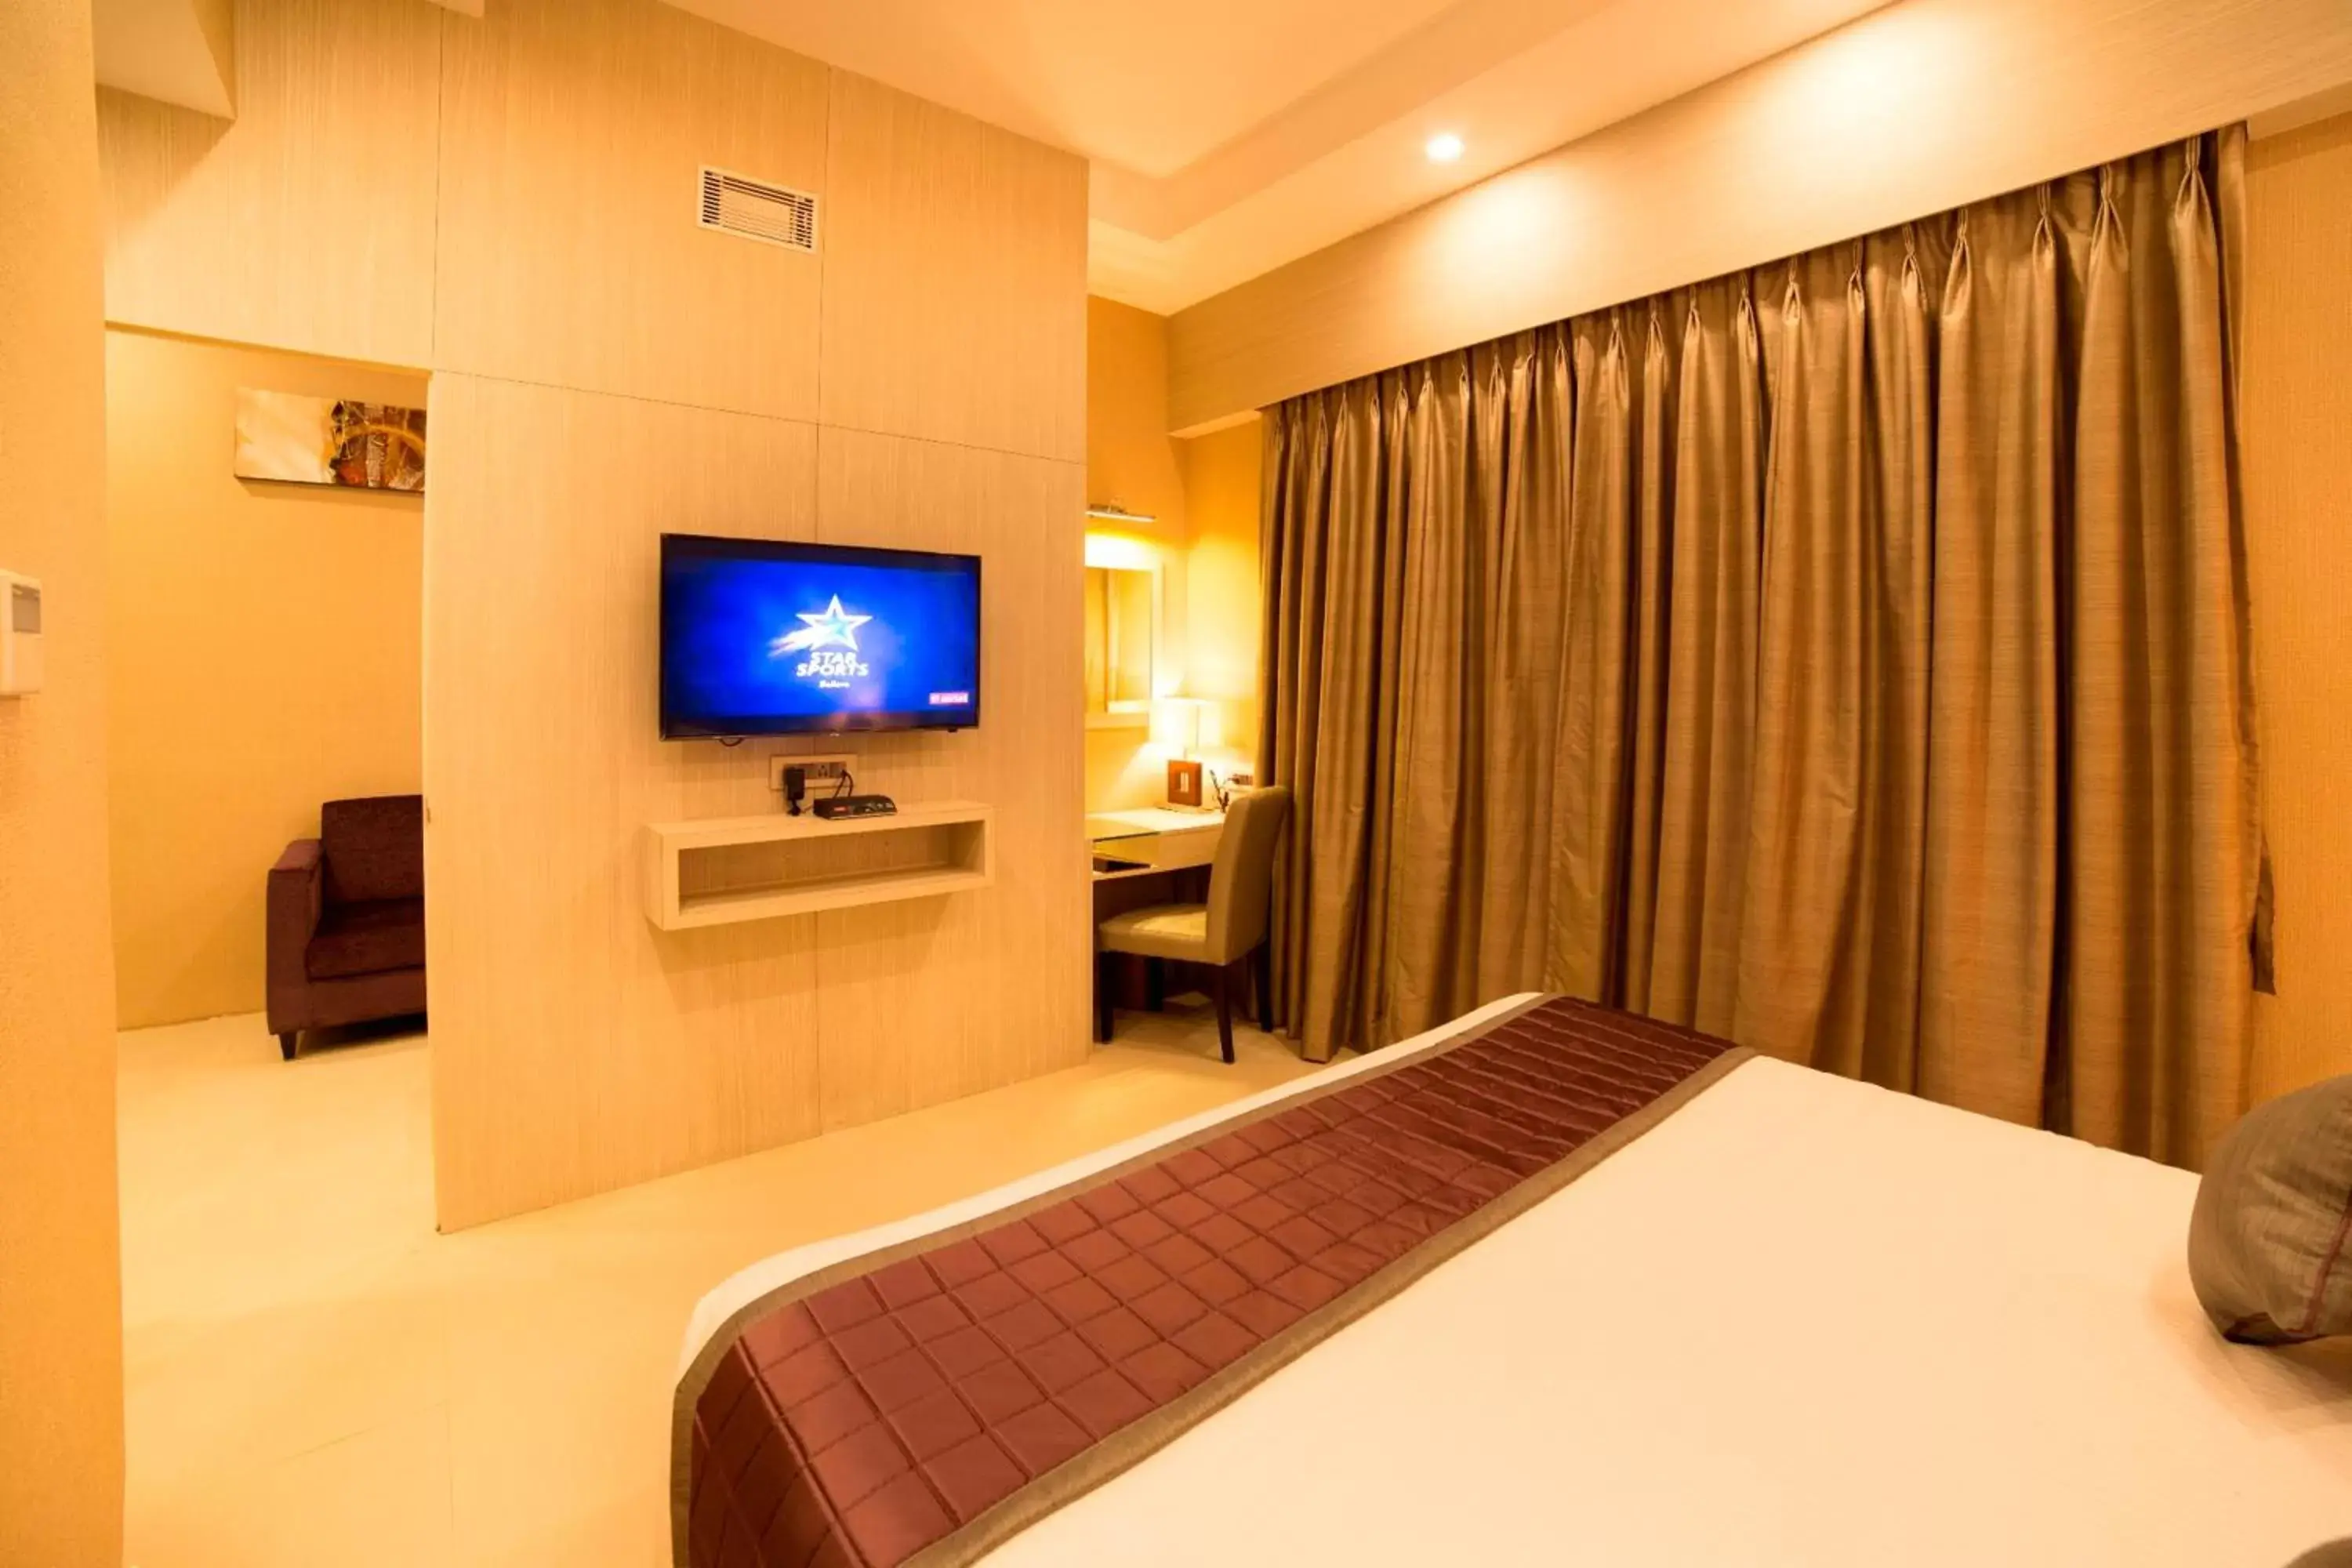 Bedroom, TV/Entertainment Center in Golden Tulip Saltlake Kolkata